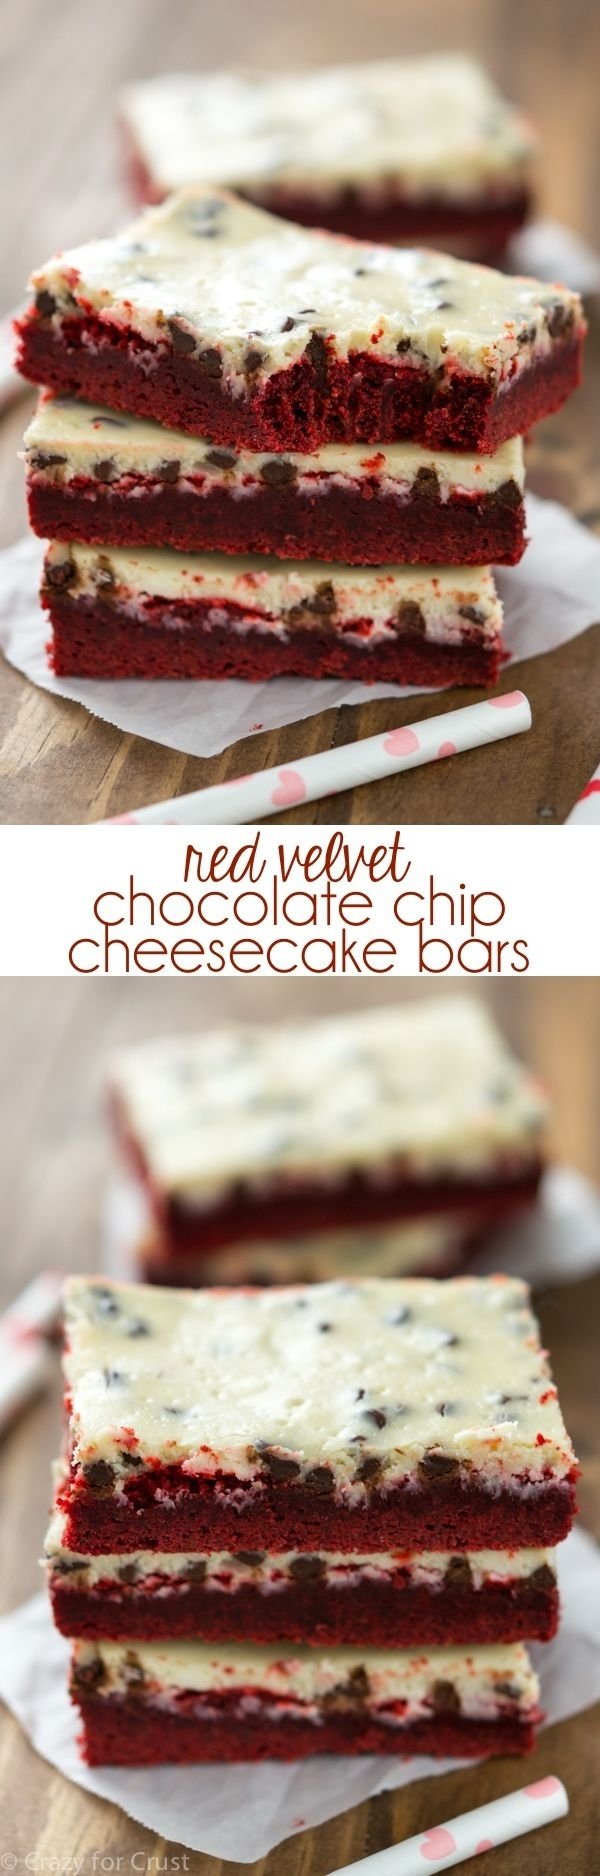 10 Pretty Red Velvet Cake Mix Recipe Ideas 176 best red velvet images on pinterest bakery recipes bread 2022